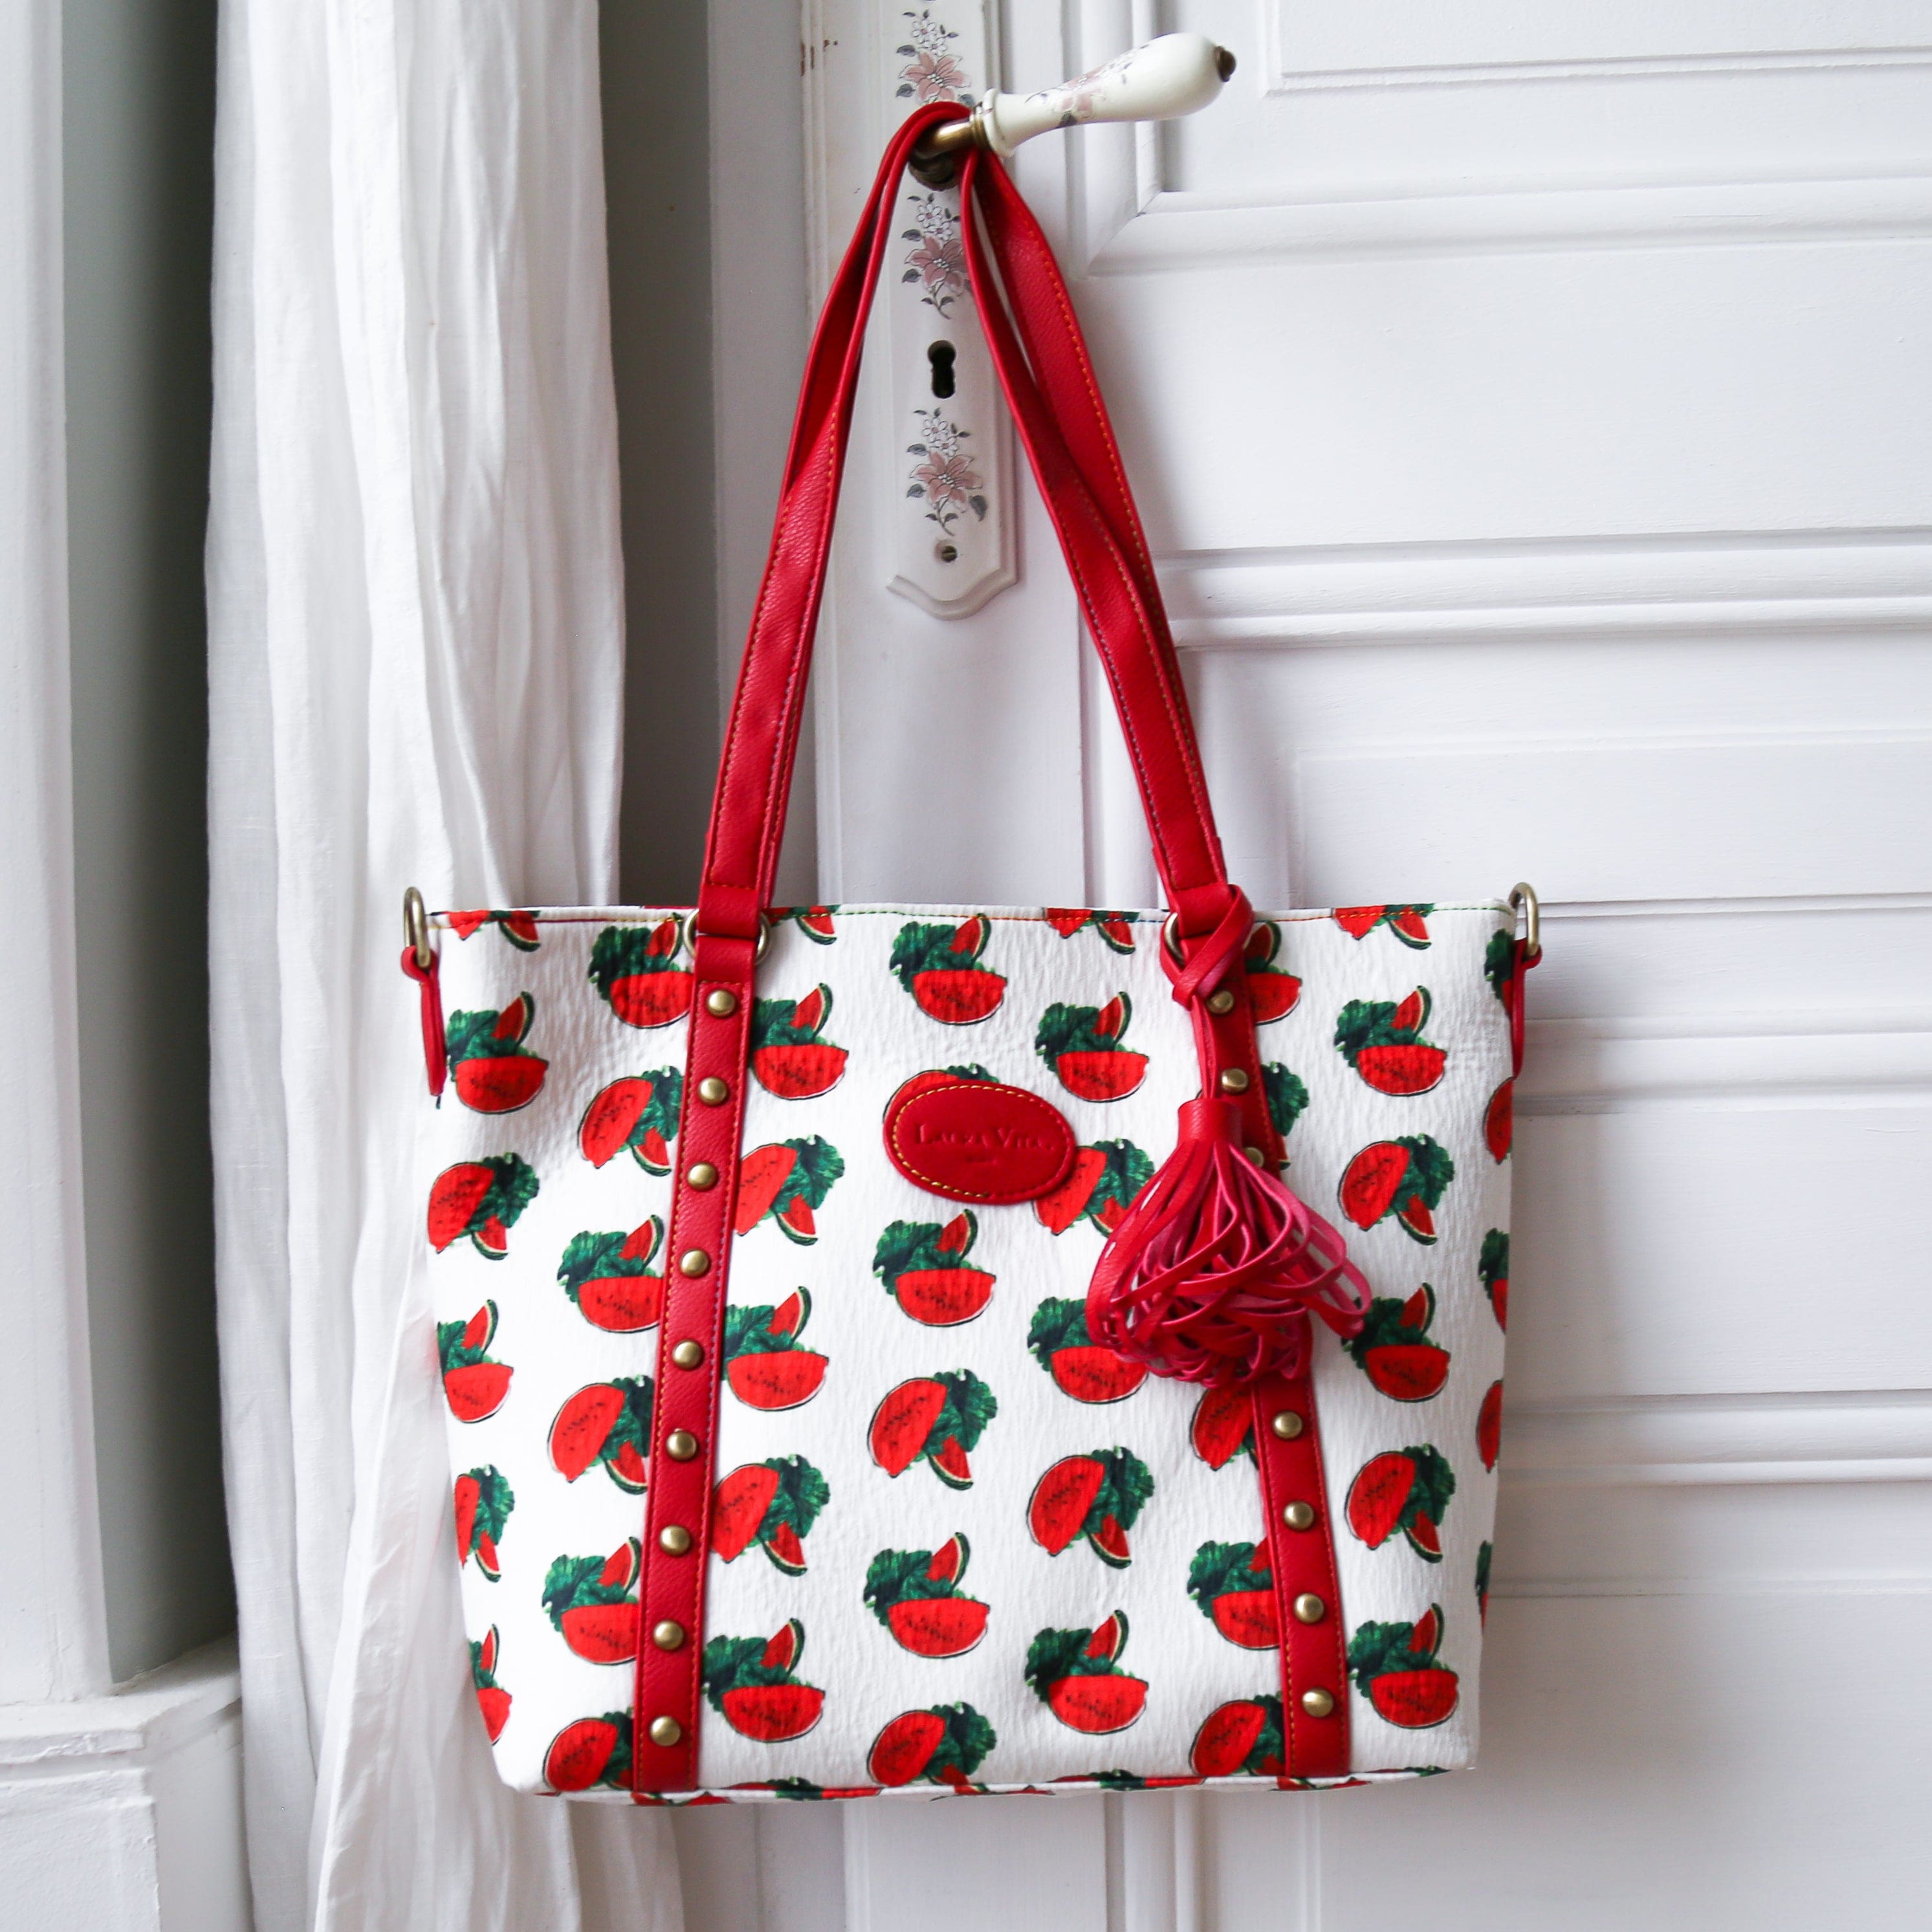 Watermelon tote bag - Bag